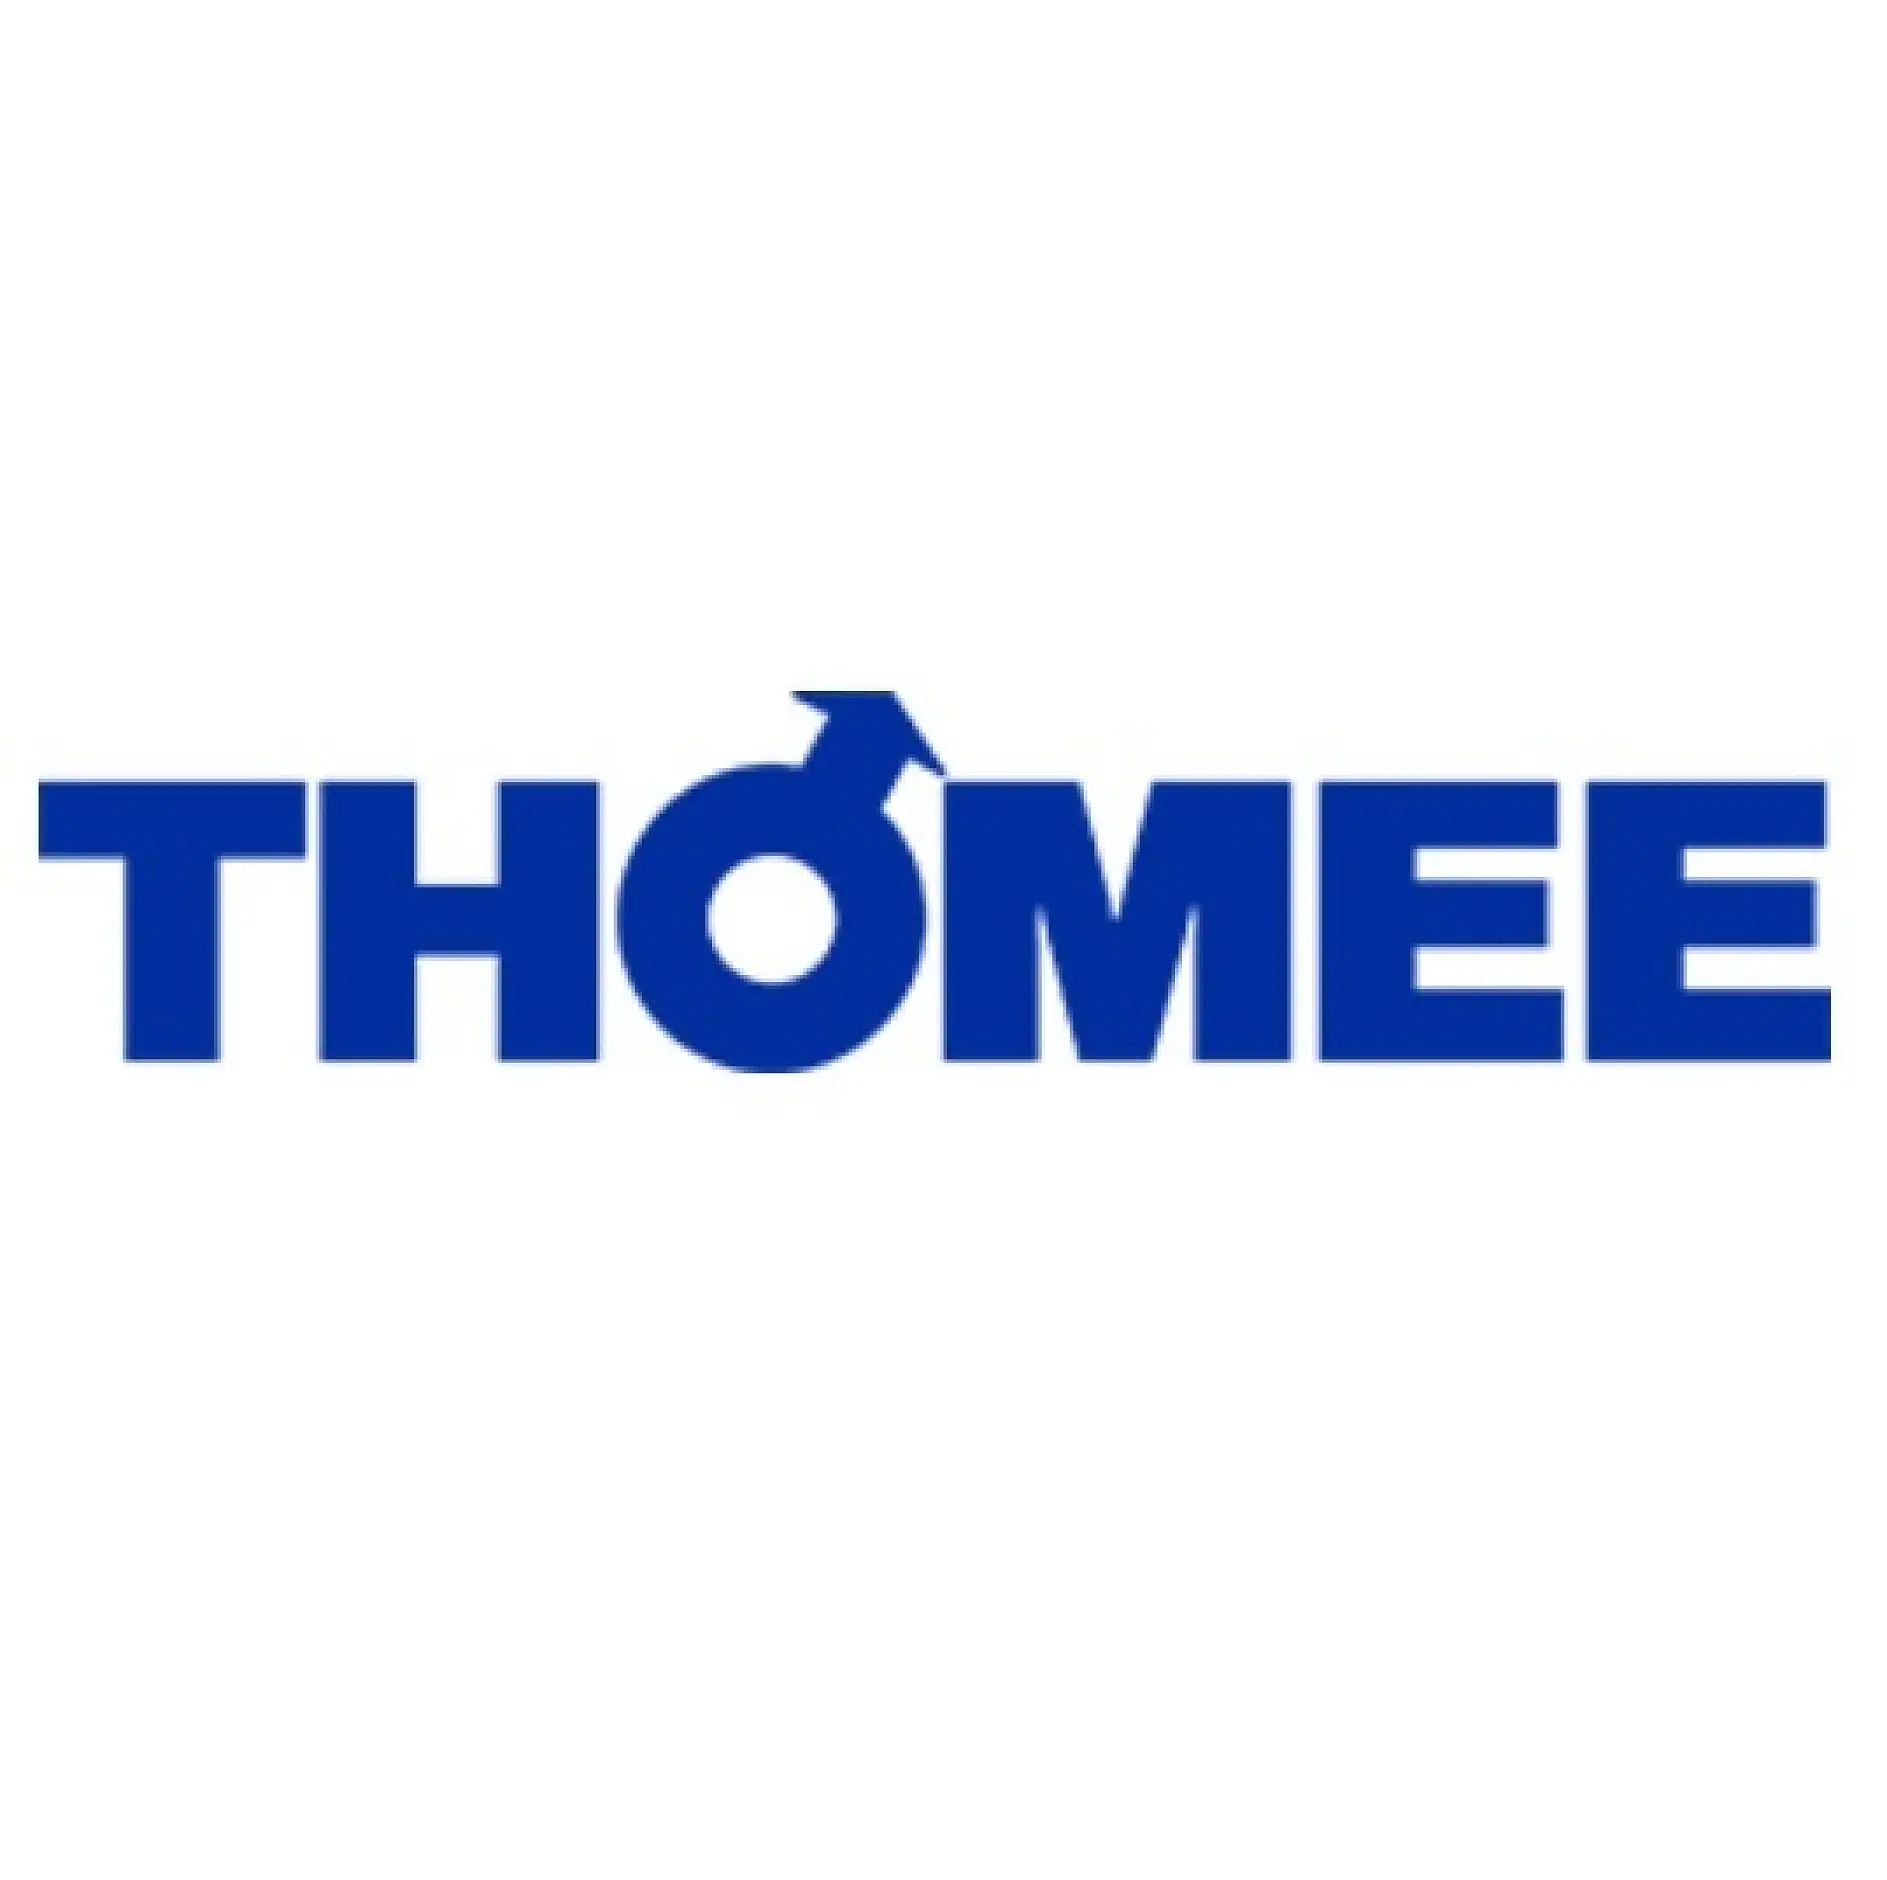 Thomee_logo